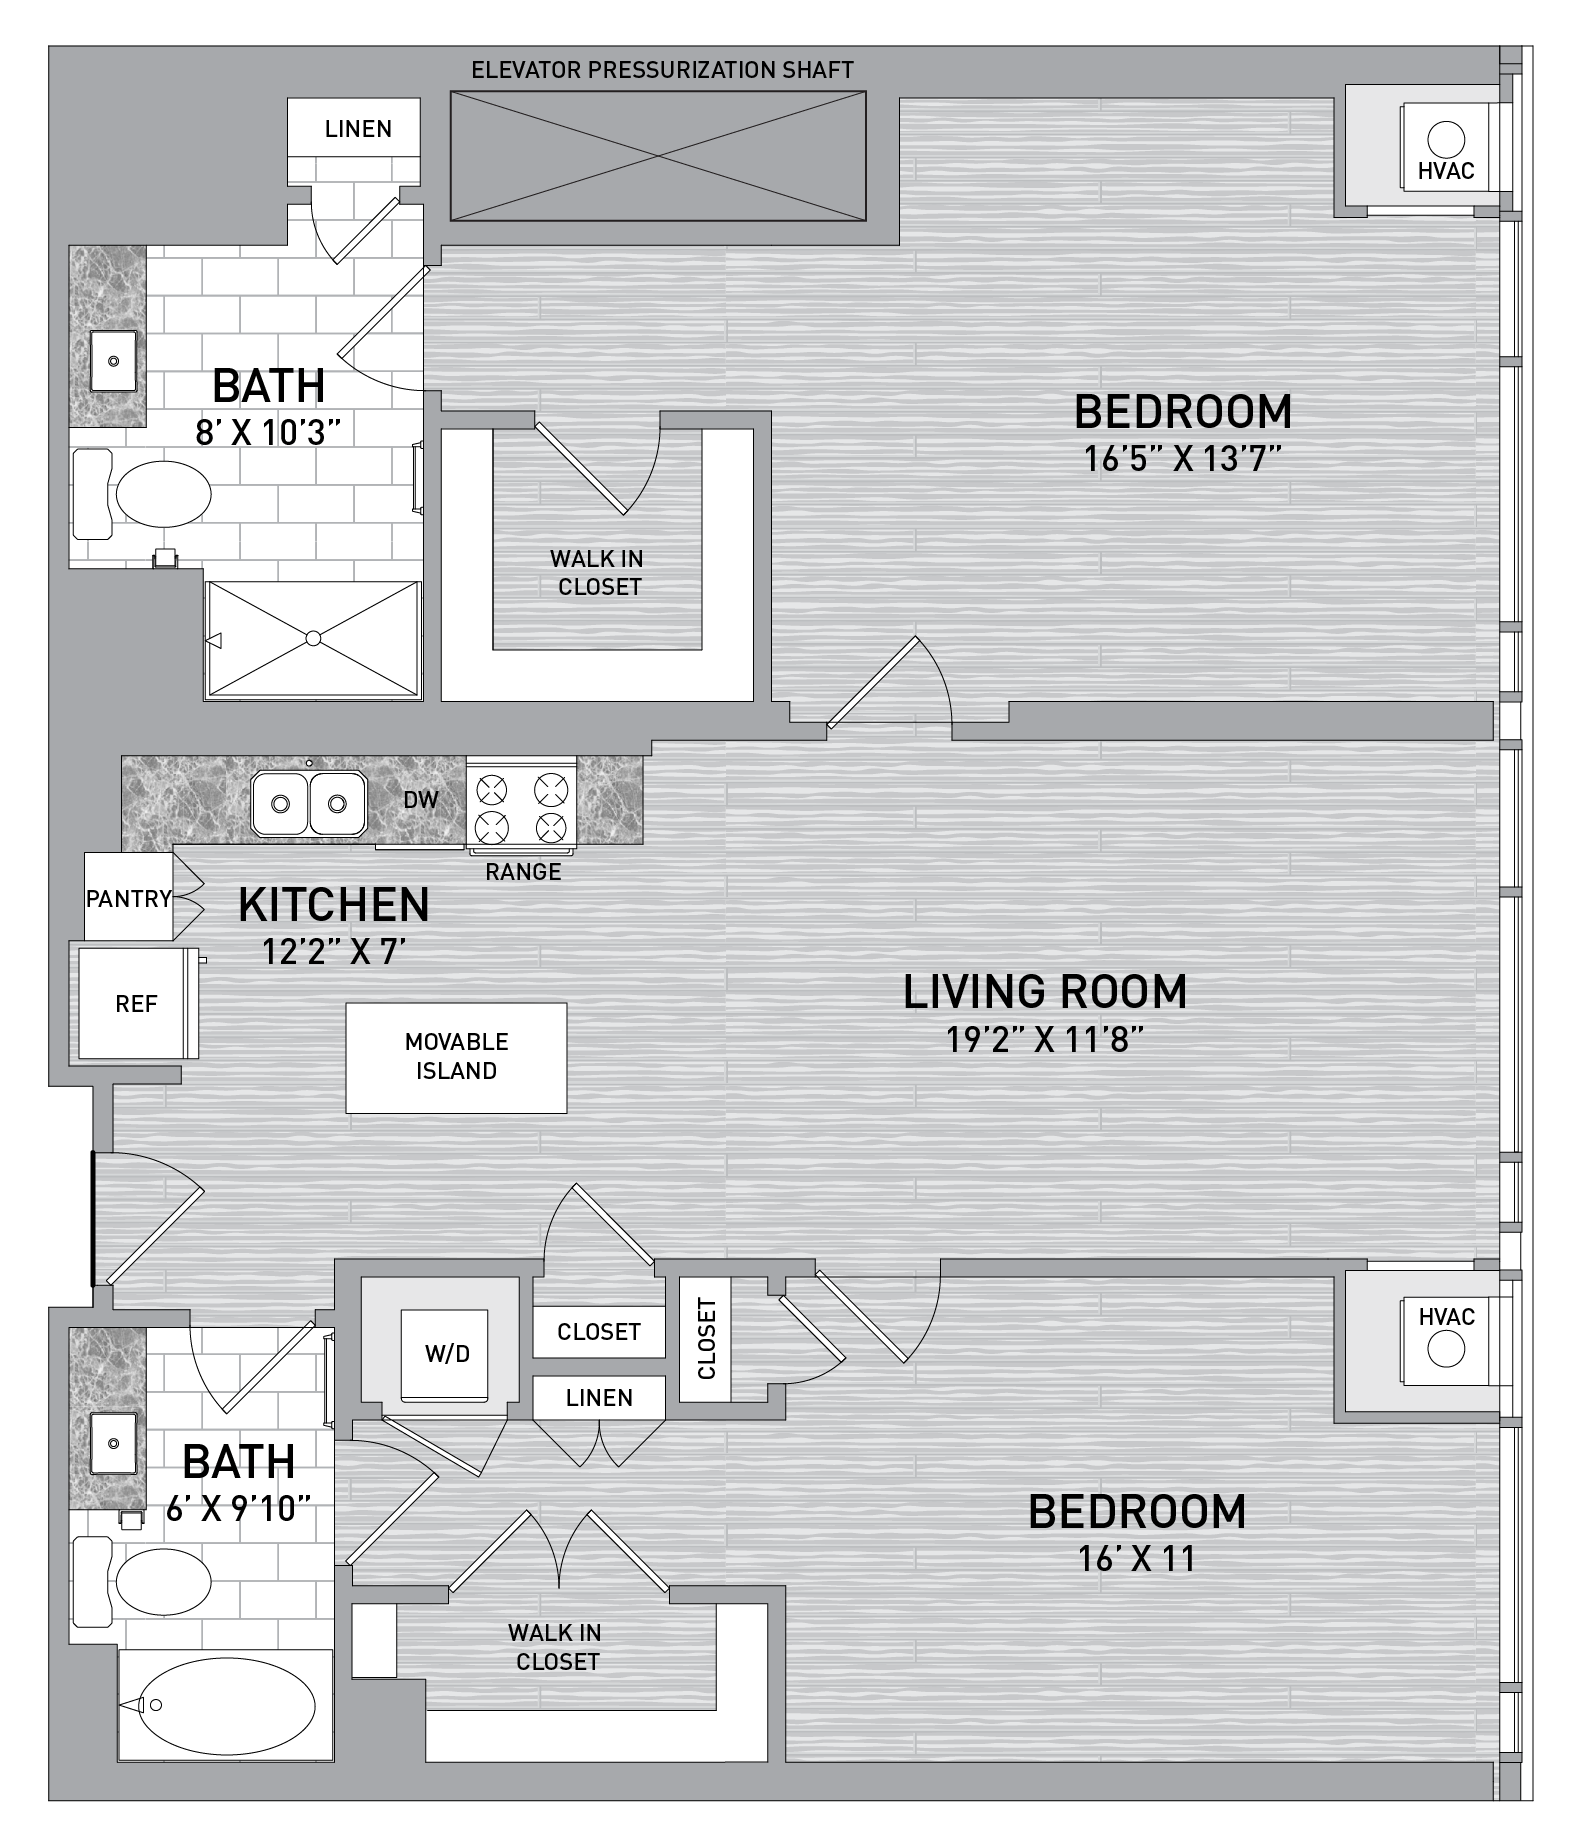 floorplan image of unit id 0905